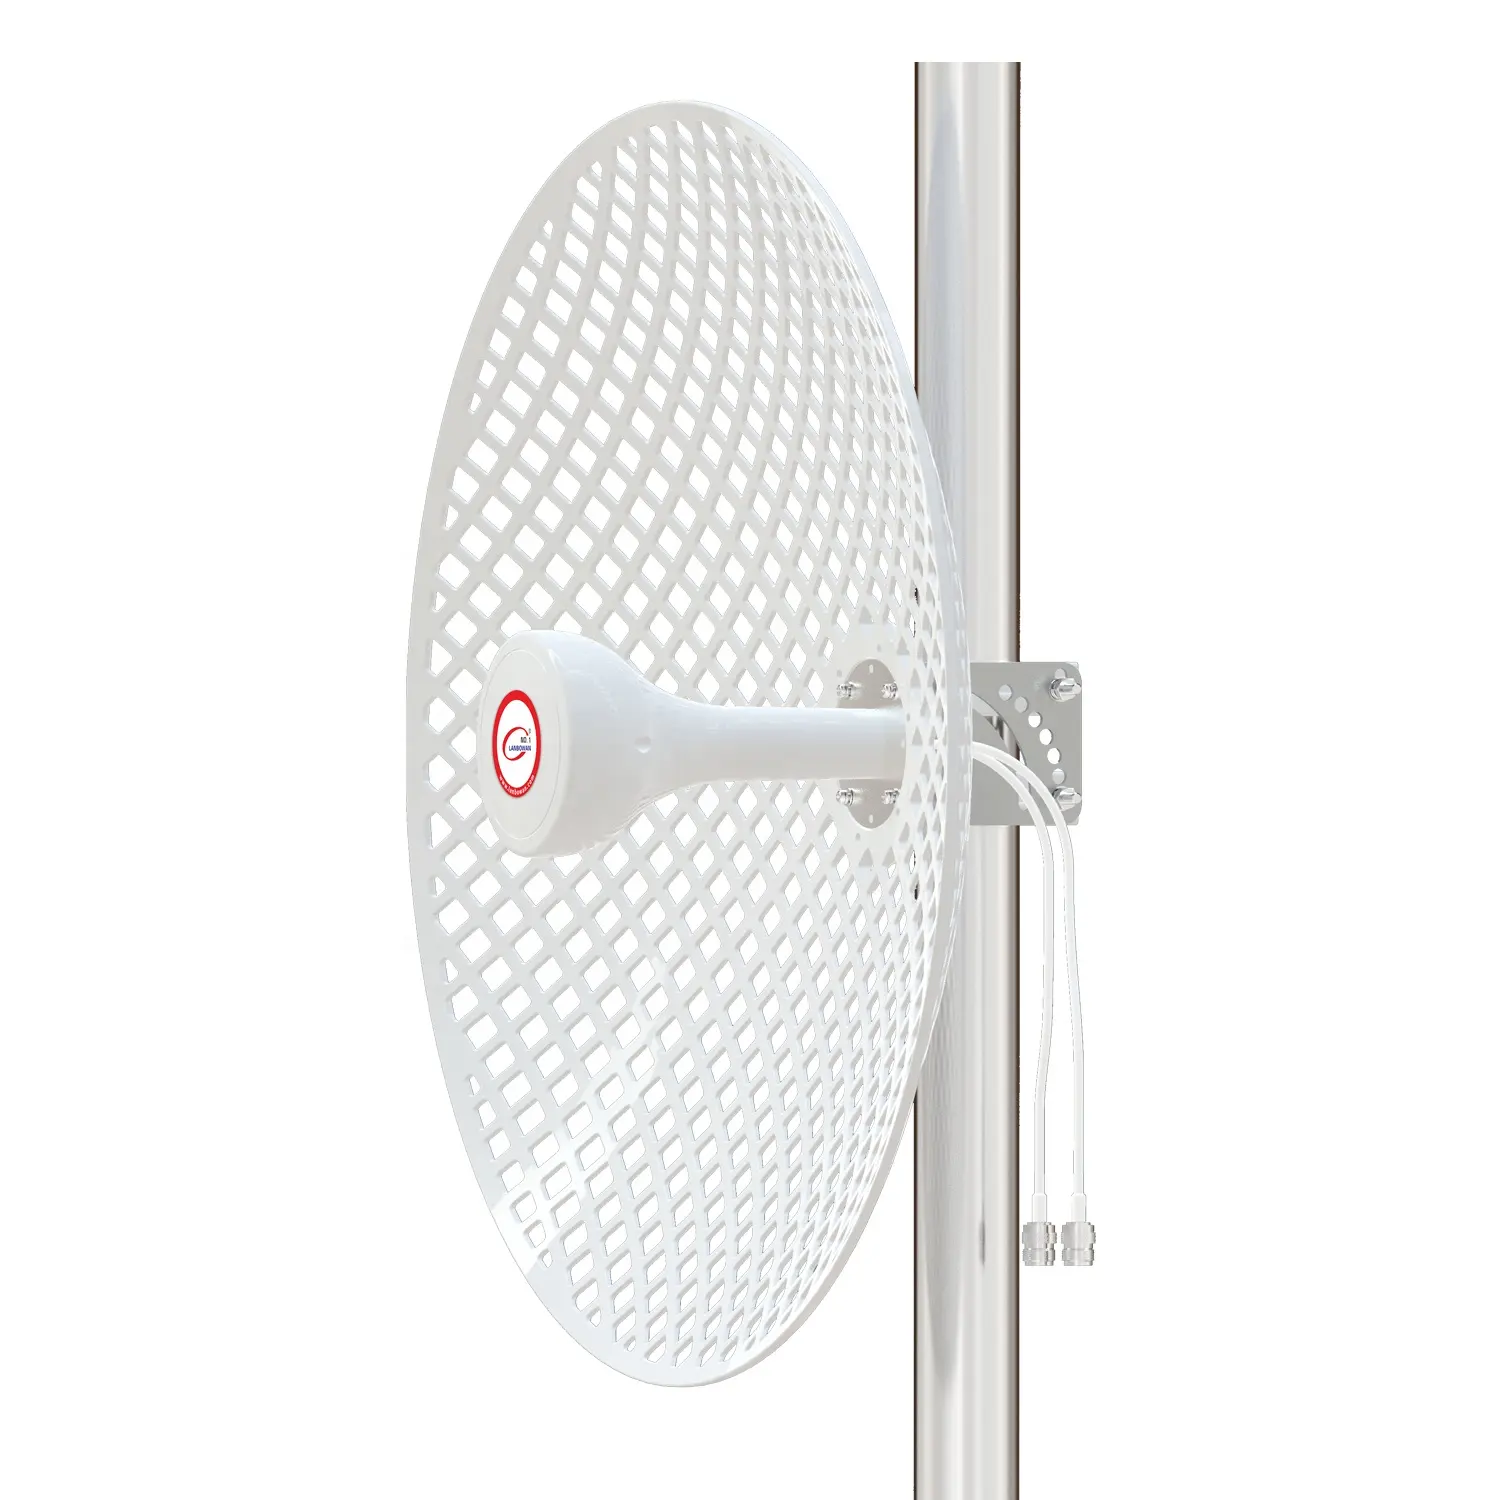 1.7-4.2GHz 2 * 22dBi döküm hiperbolik anten örgü parabolik 2x2 MIMO çanak anten için huawei radyo ZTE mikrotik